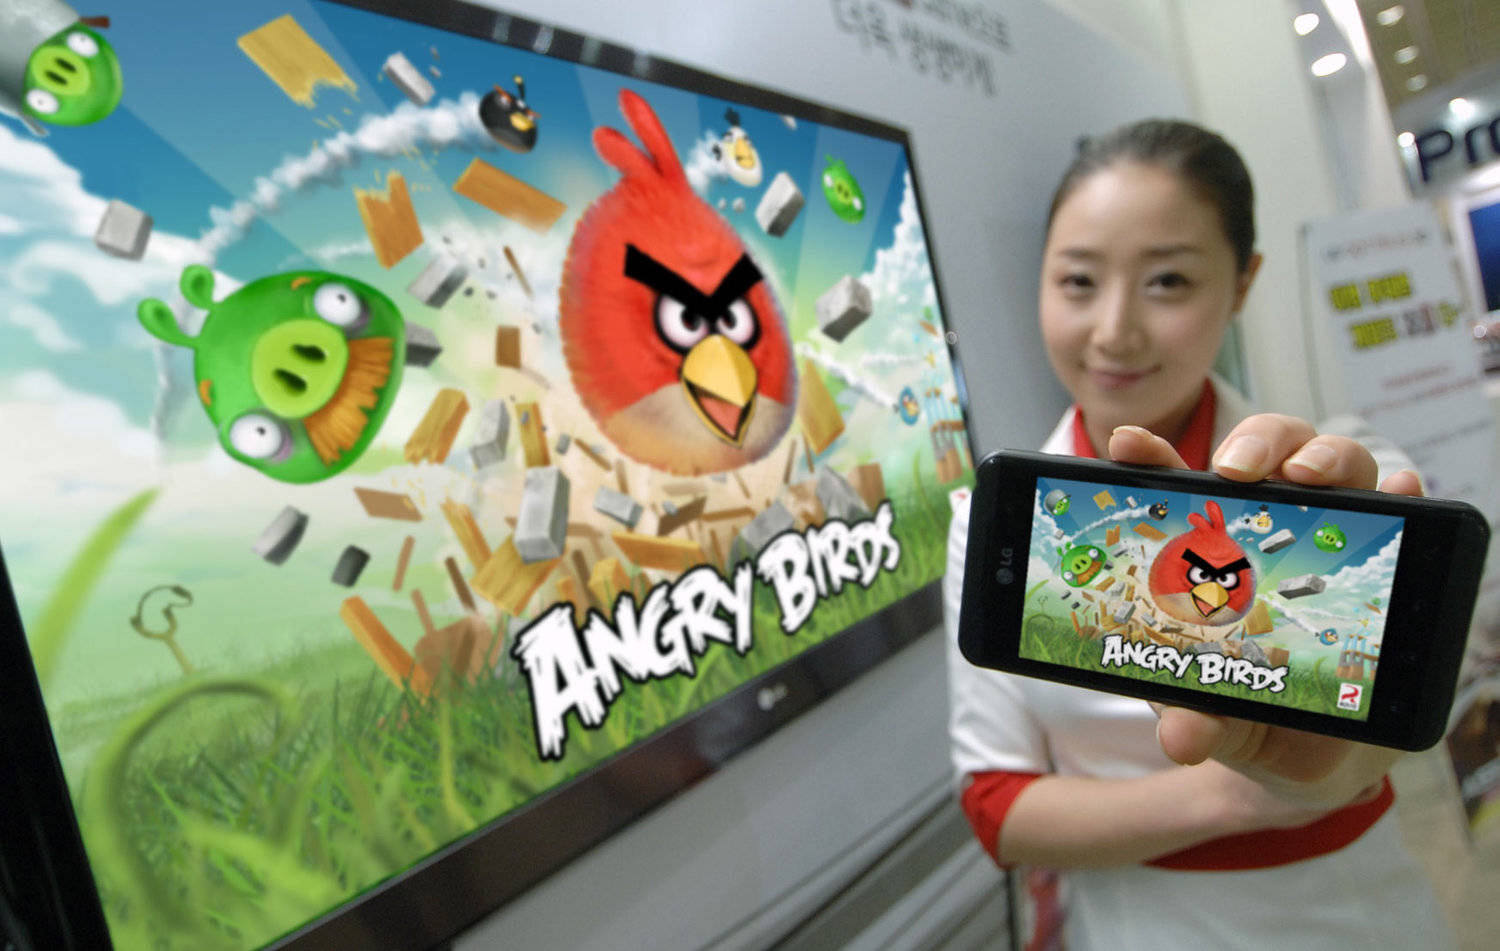 Soome tuntuima mängustuudio Rovio Entertainment'i mäng Angry Birds on tuntud kõigis maailma nurkades